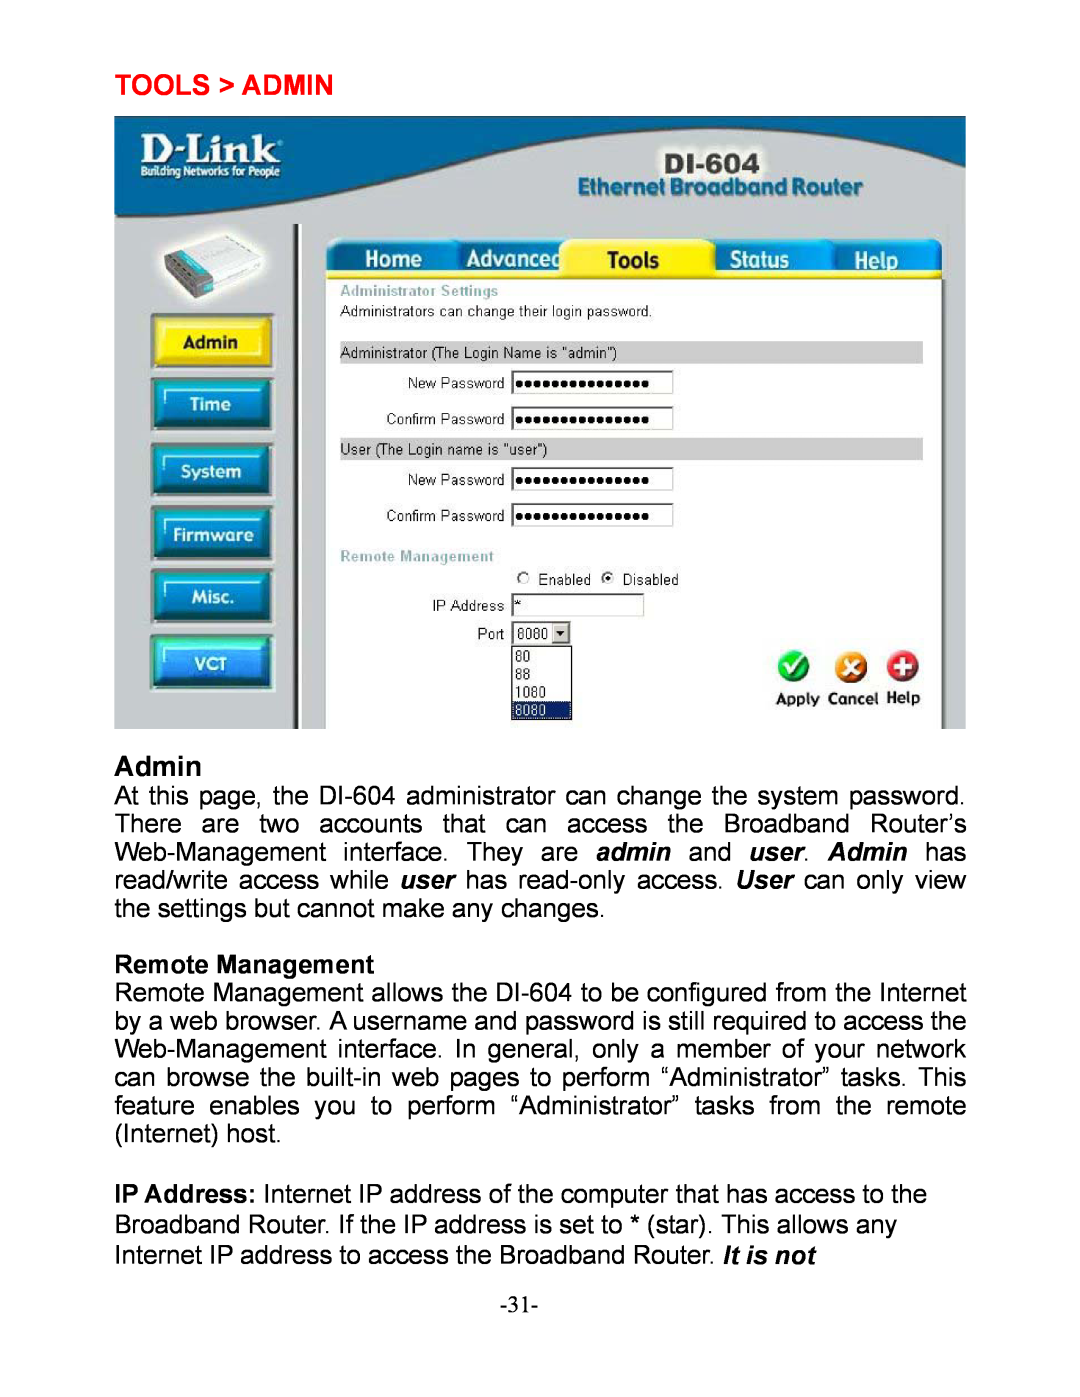 D-Link DI-604 manual Tools Admin, Remote Management 